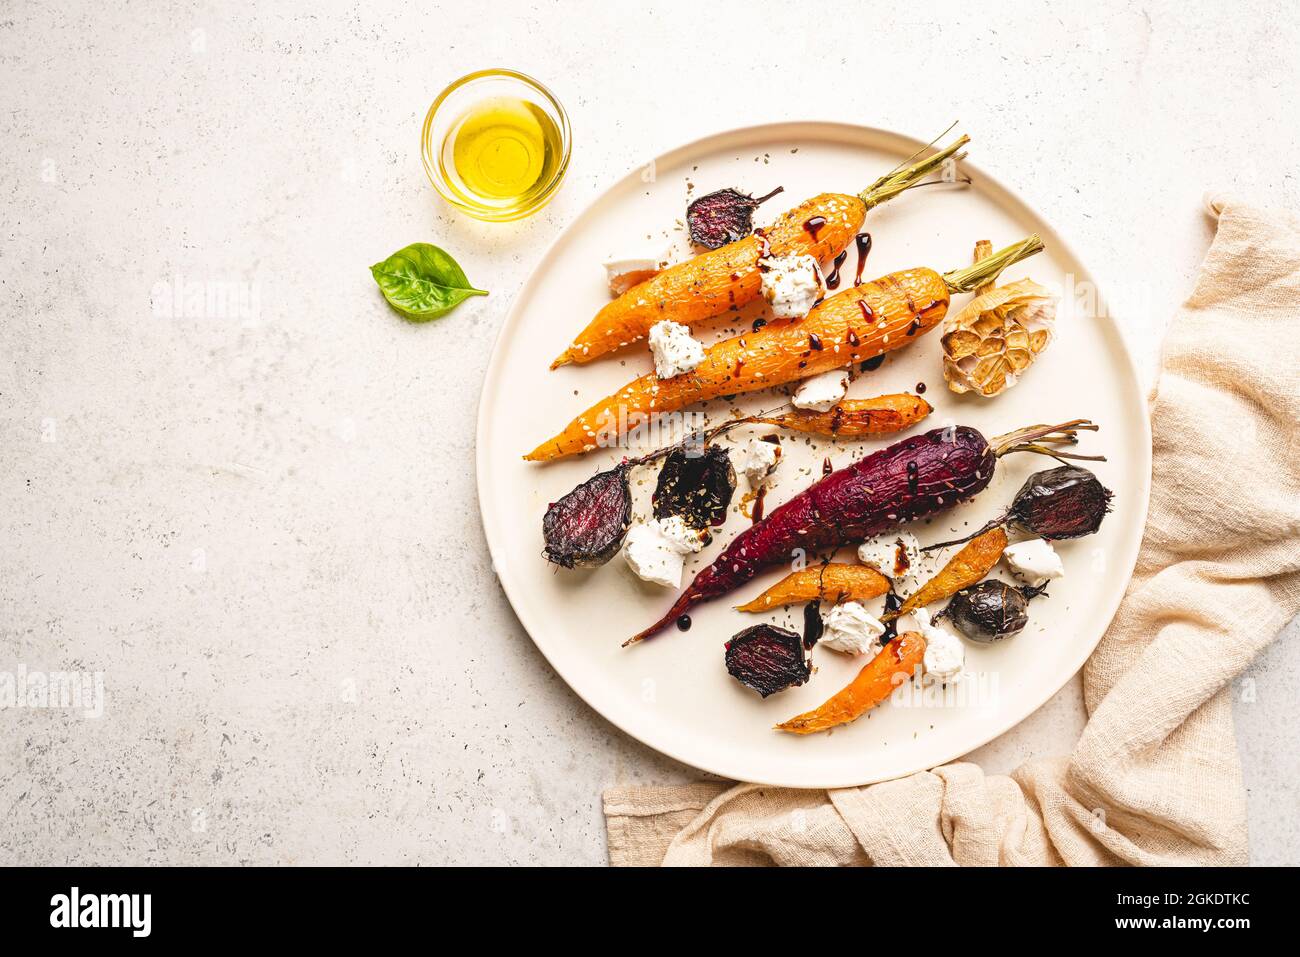 Jeunes carottes entières et colorées rôties aux herbes et au fromage servis sur une assiette sur fond blanc. Vue de dessus Banque D'Images